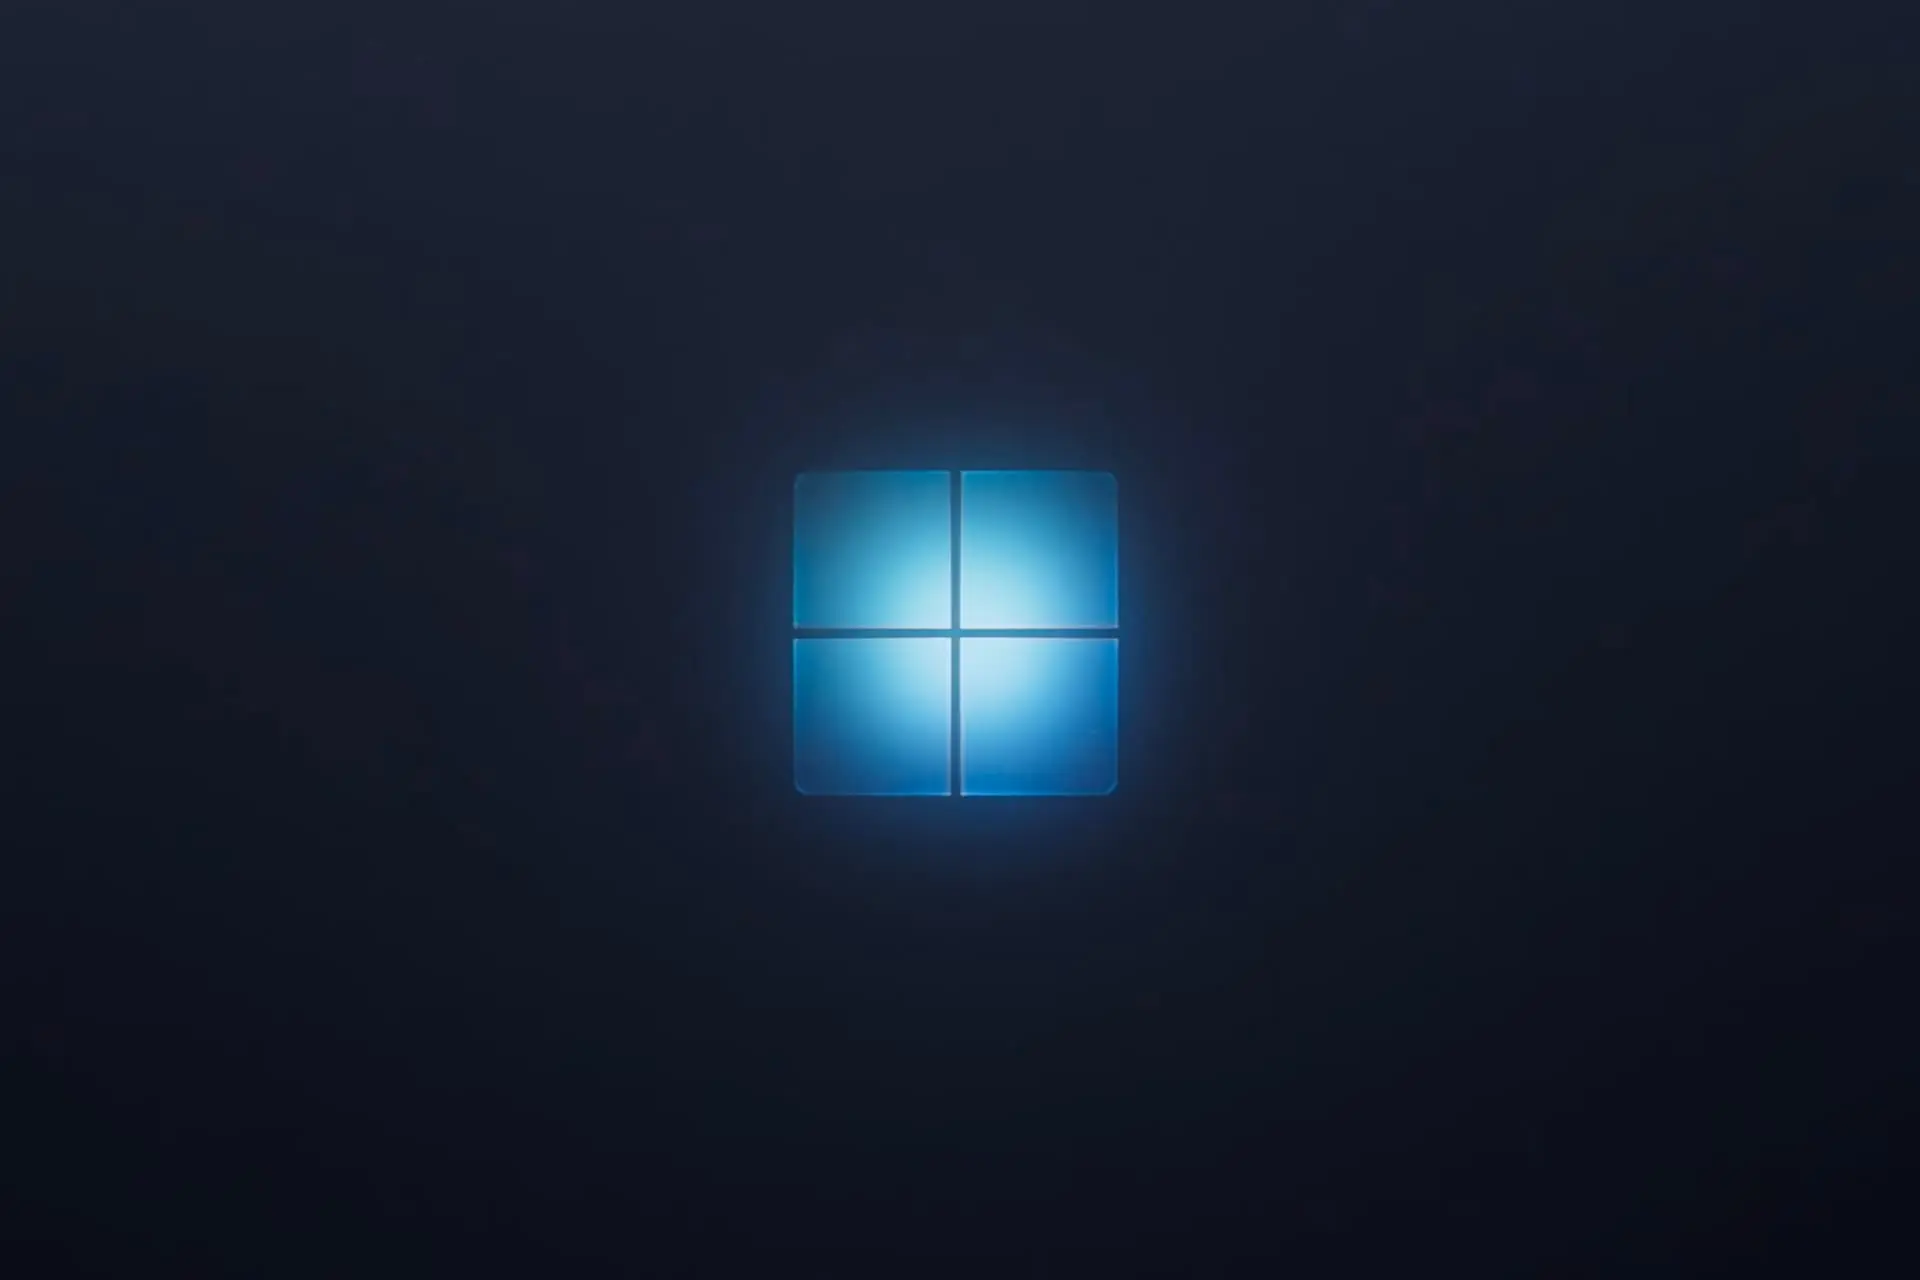 Windows logo in dark background